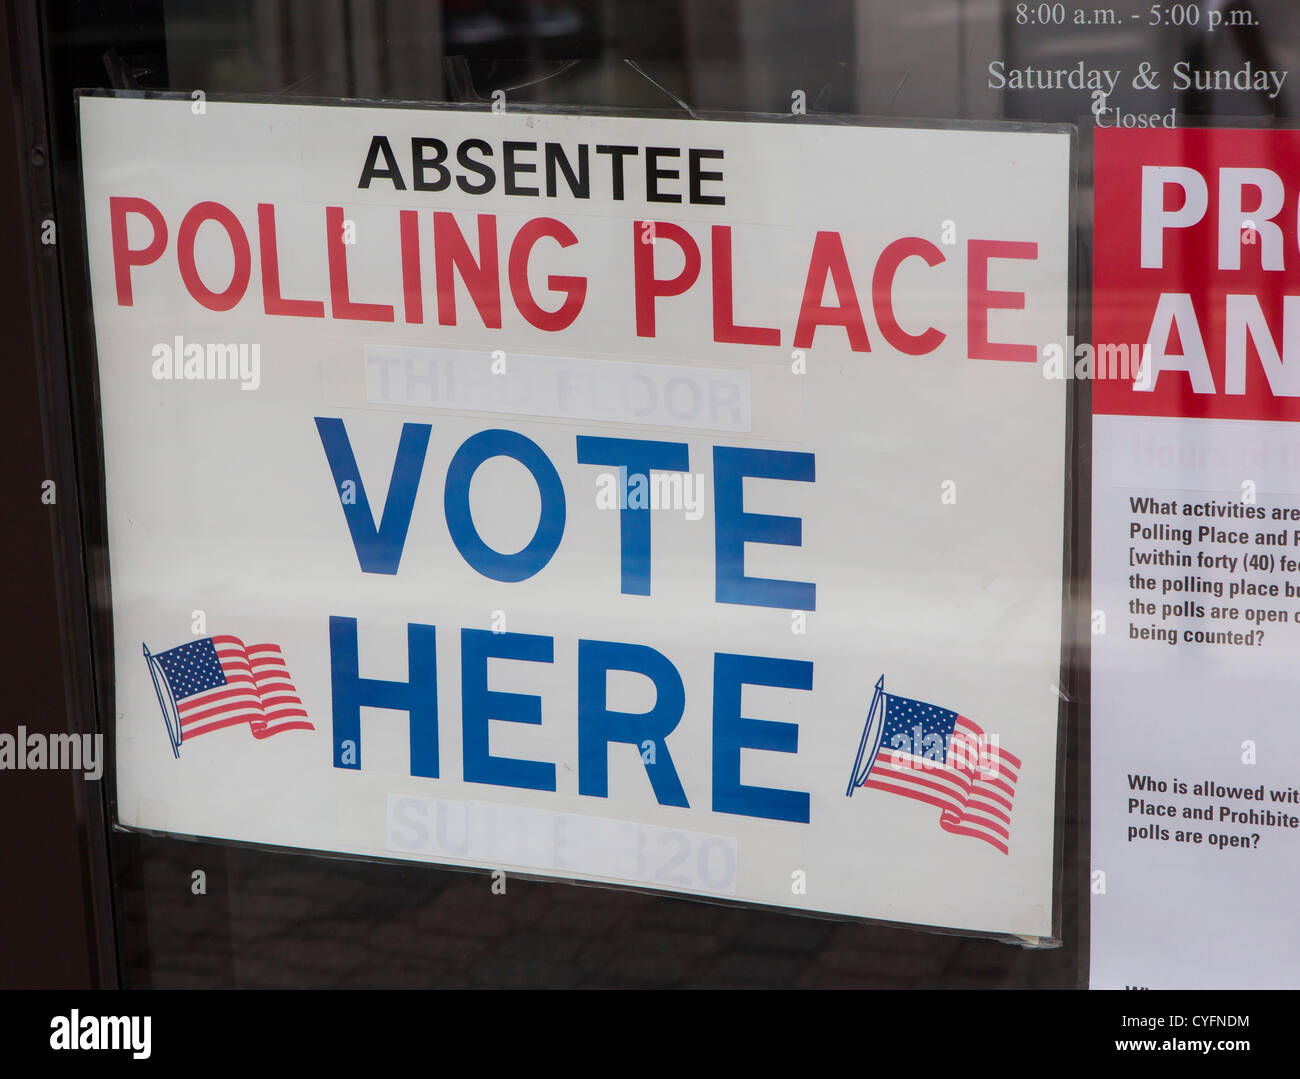 ARLINGTON, VIRGINIA, USA - Absentee voting sign for 2012 Presidential election. Stock Photo